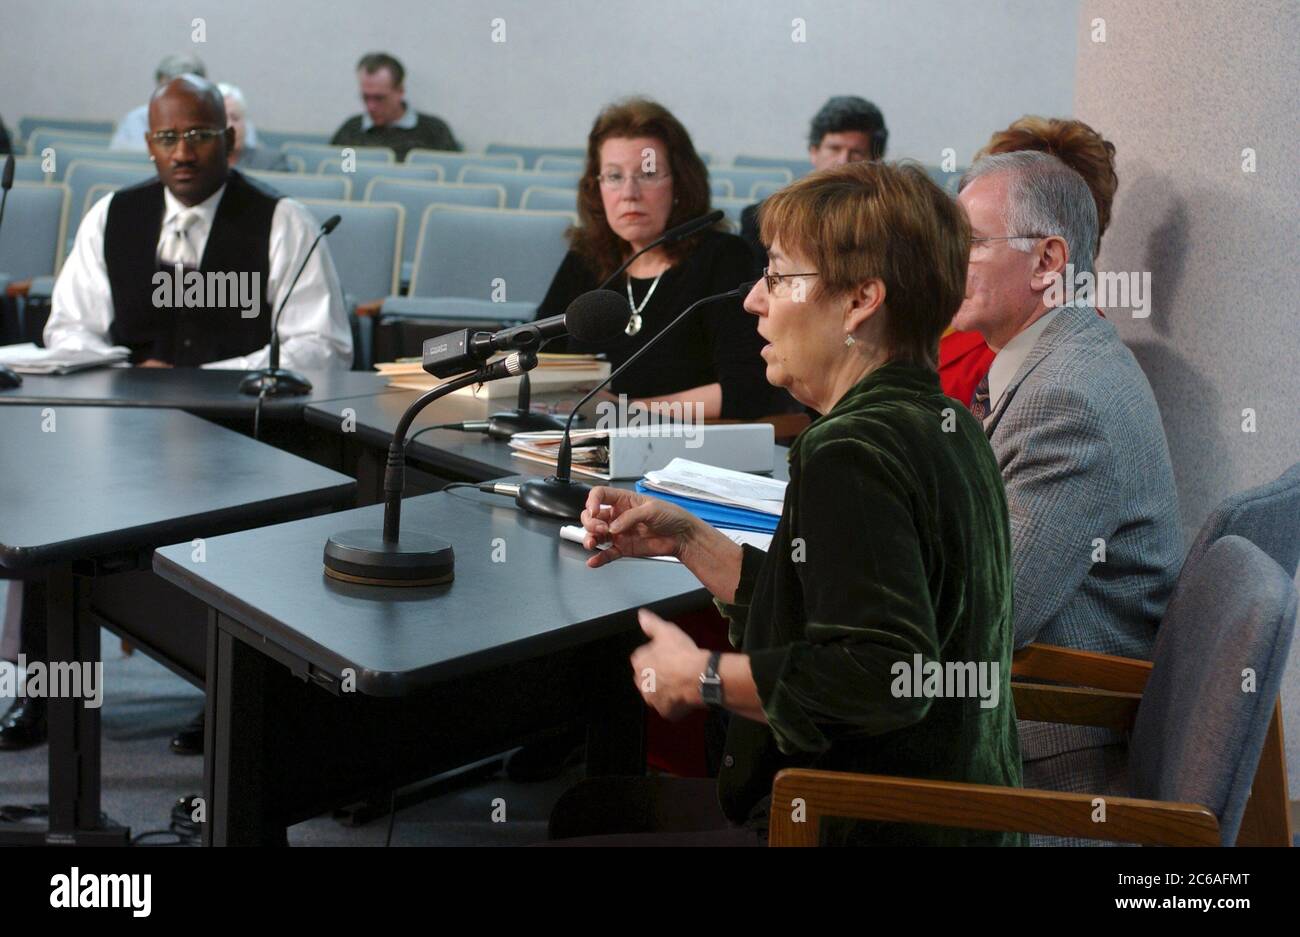 Austin, Texas, USA, 20. Januar 2004: Zeuge sagt während einer Sitzung des Travis County (Texas) Commissioners Court aus, in der Umweltfragen diskutiert werden. ©Bob Daemmrich Stockfoto